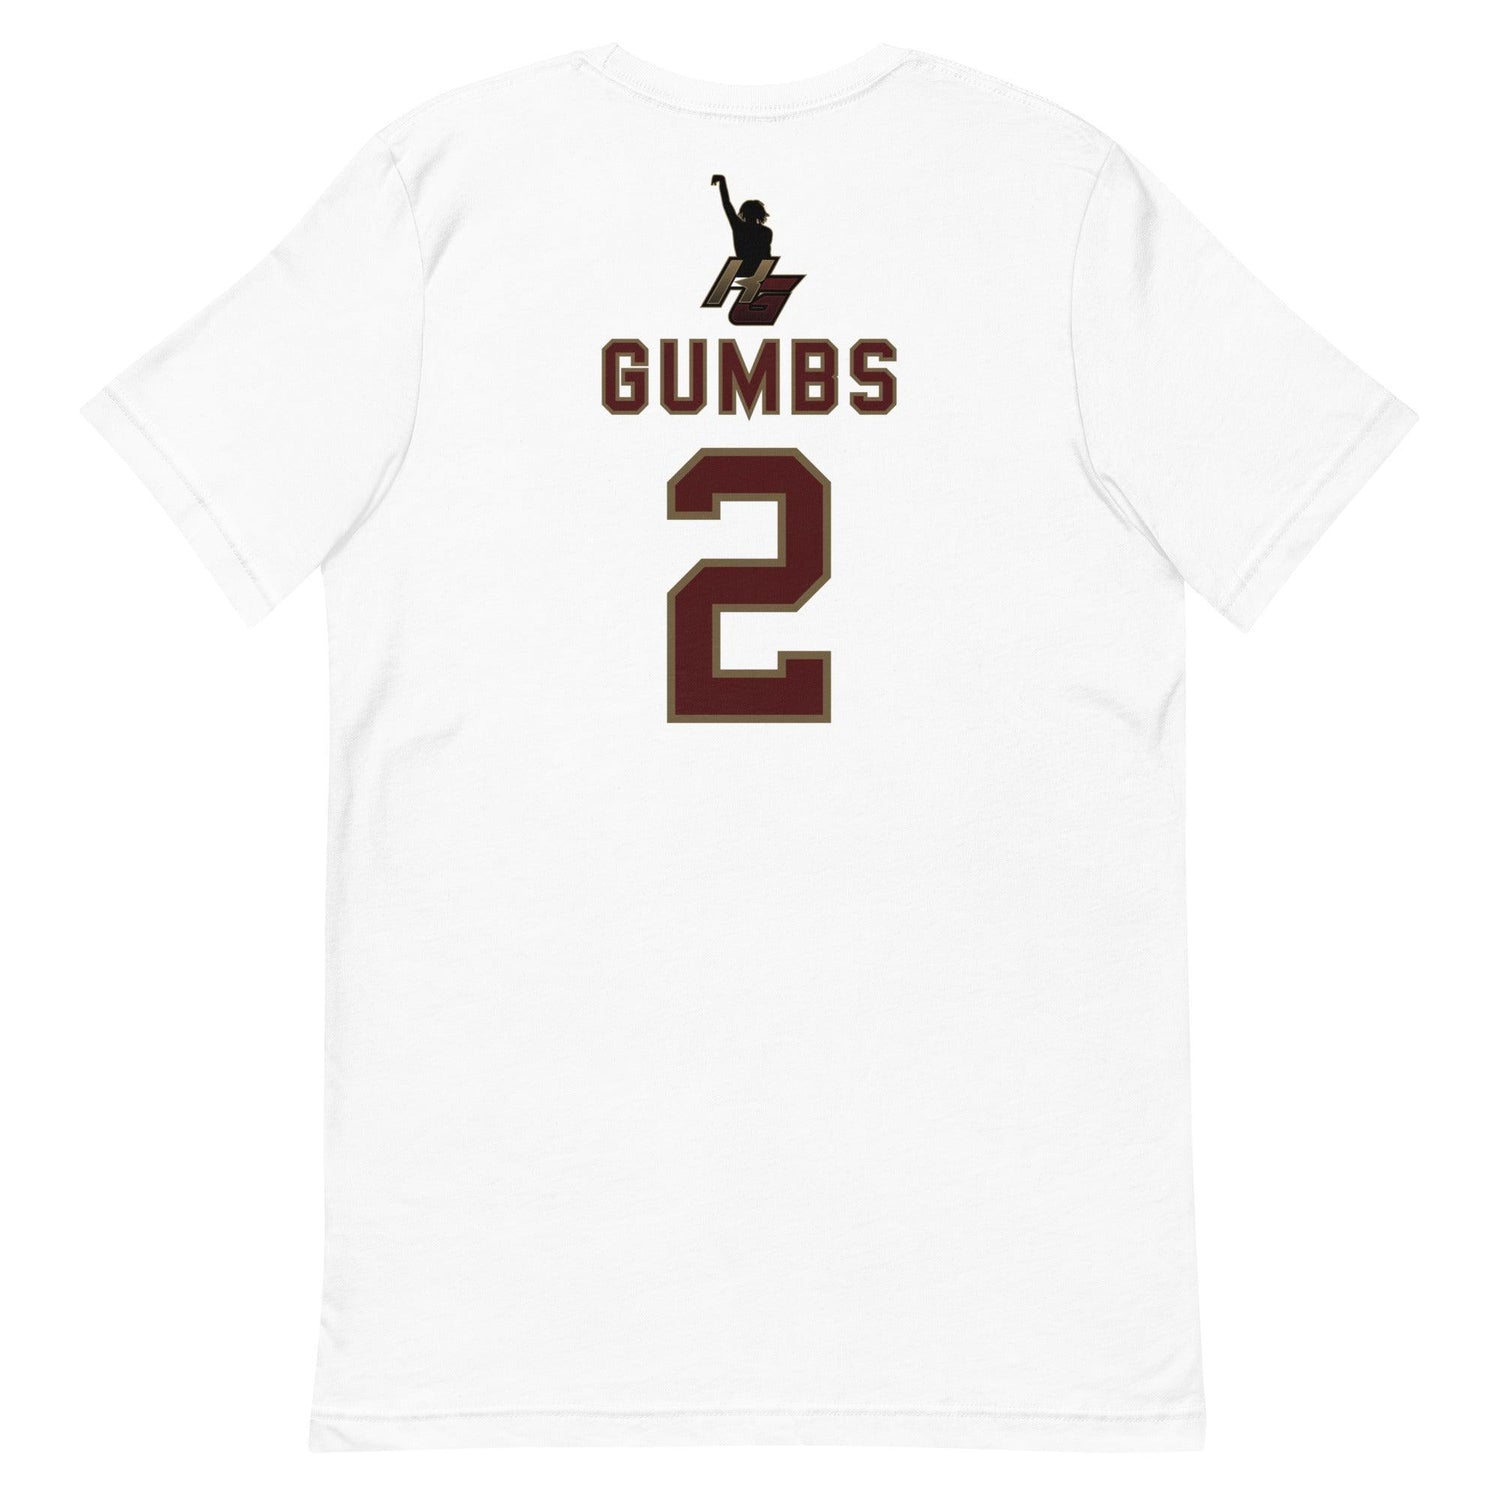 Kaden Gumbs "Jersey" t-shirt - Fan Arch